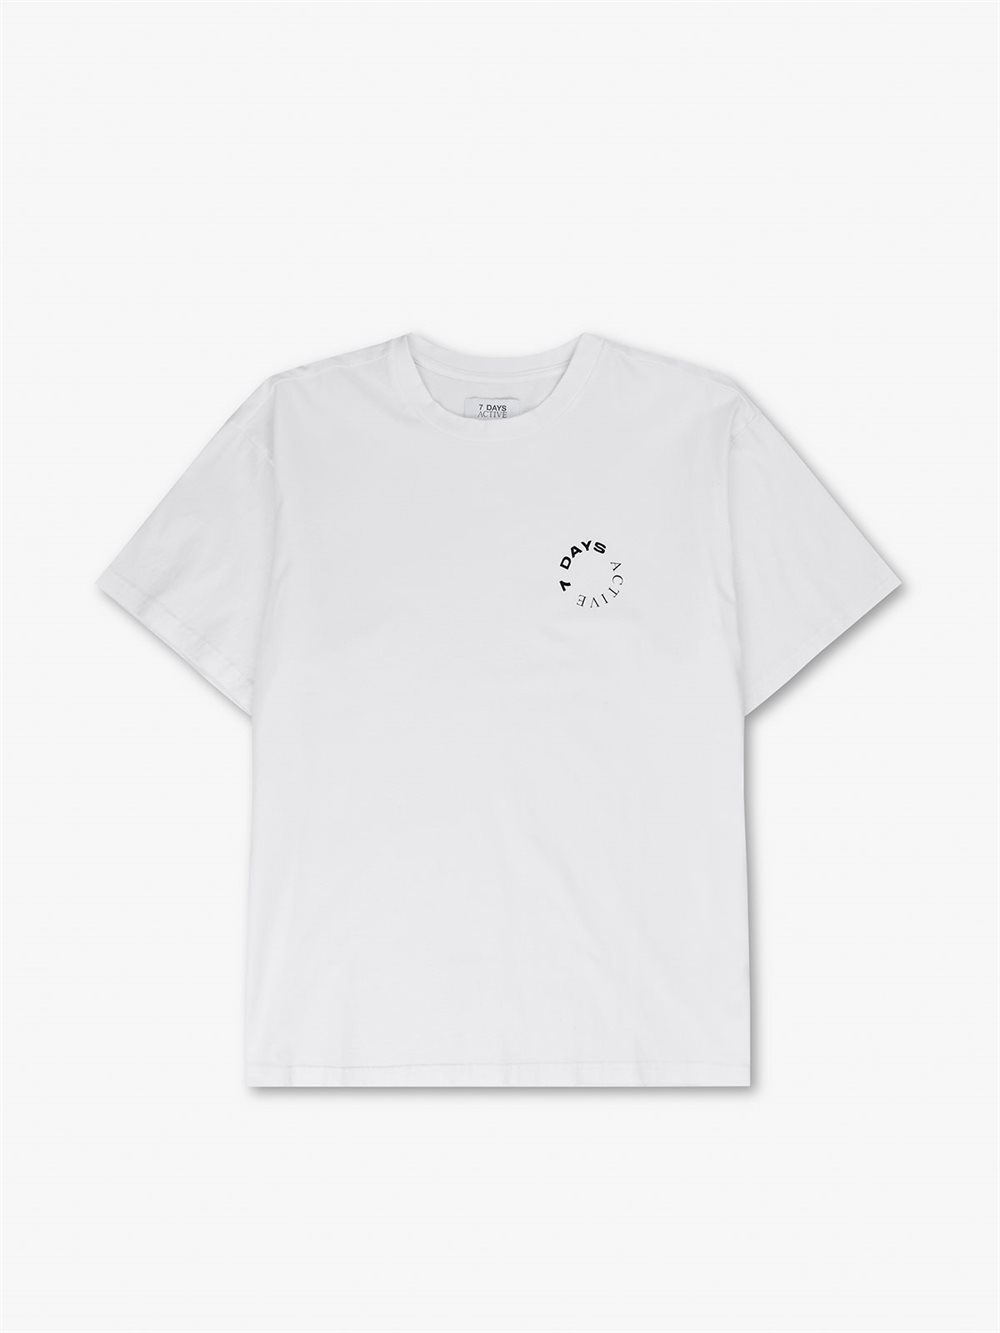 Organic Logo Tee T-Shirt White Unisex